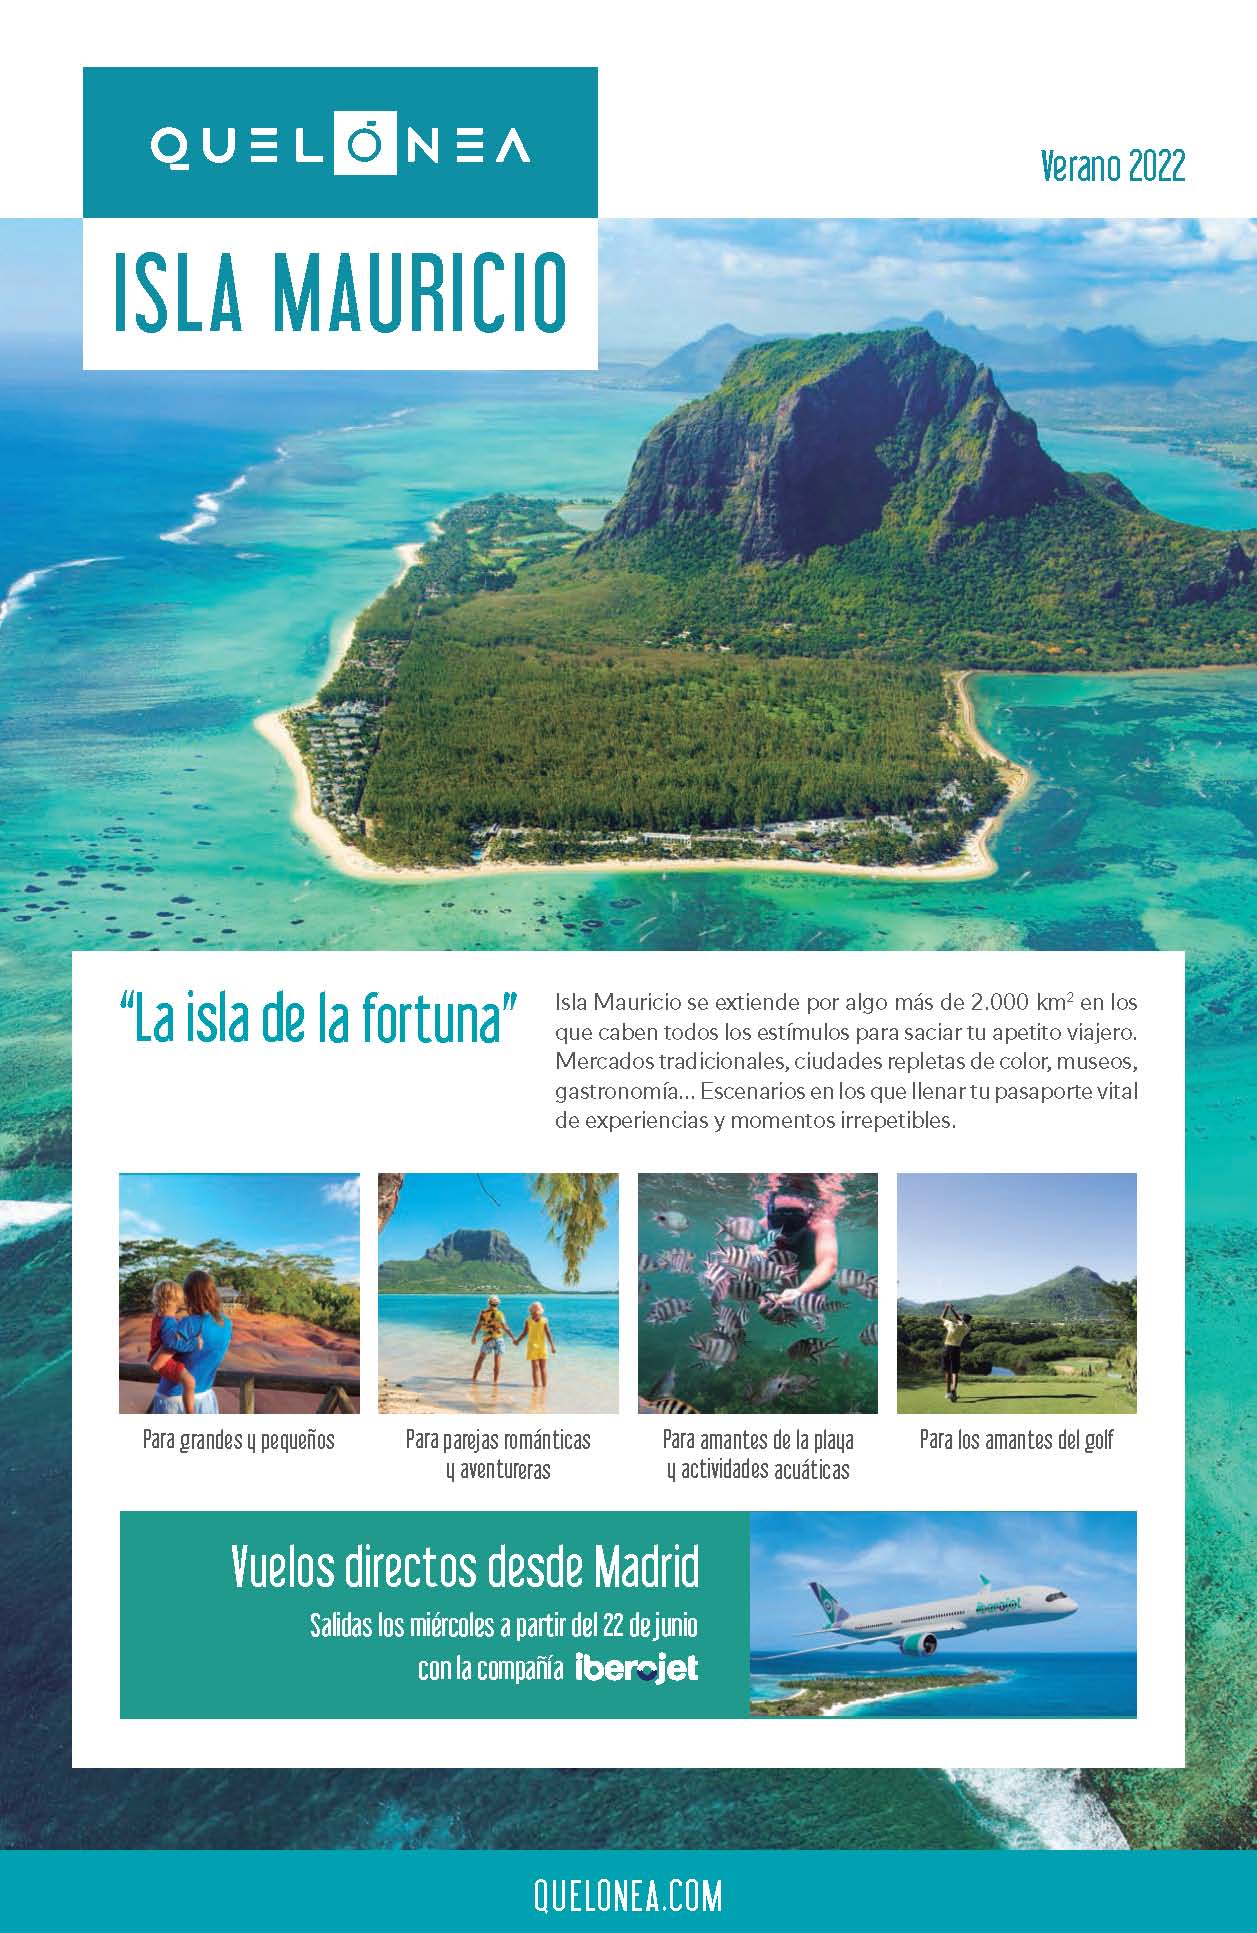 Oferta Quelonea Islas Mauricio Verano 2022 Vuelo directo desde Madrid desde 1213 €